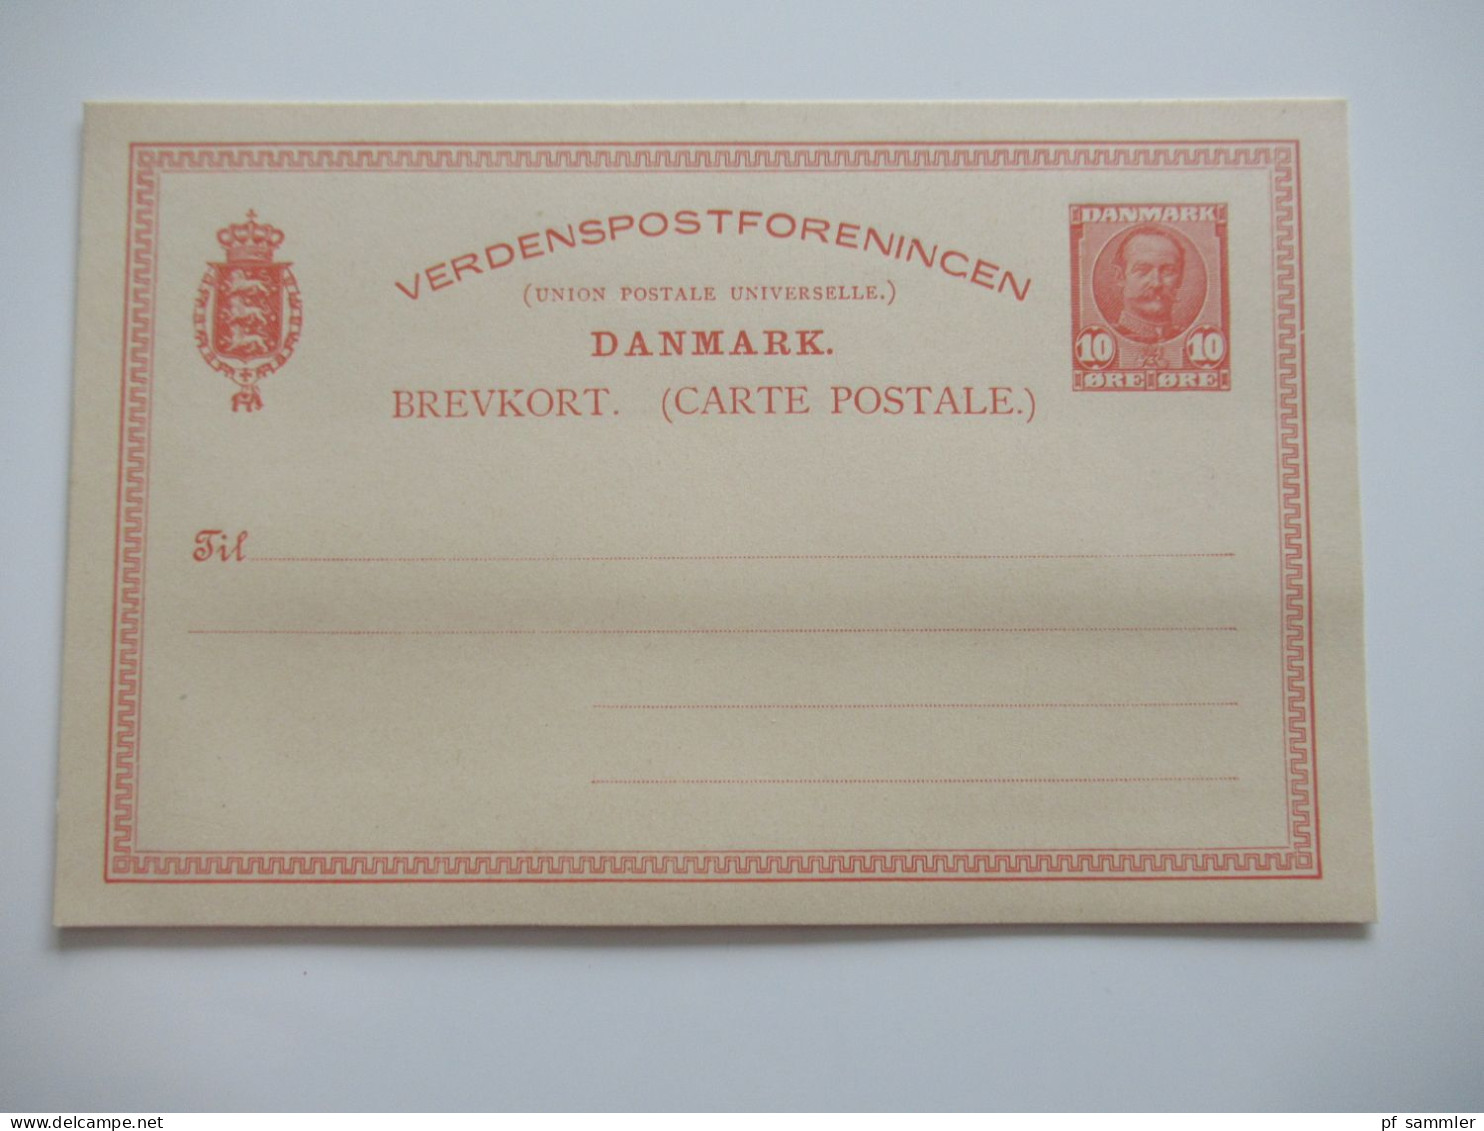 Dänemark interessanter Ganzsachen Posten ab ca.1870er Jahre / gebraucht und ungebraucht! insgesamt 14 Stück